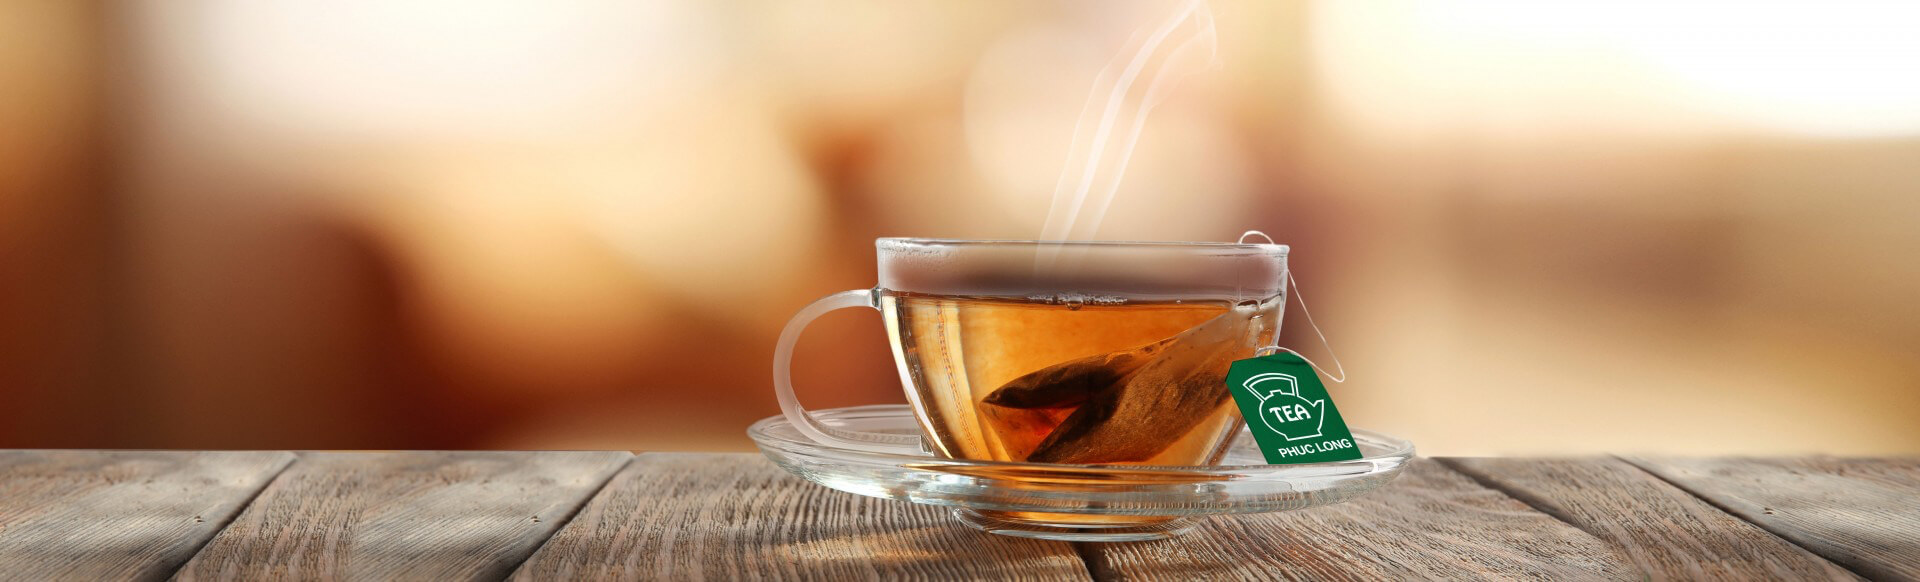 Các loại trà Phúc Long được yêu thích ở trong và ngoài nước